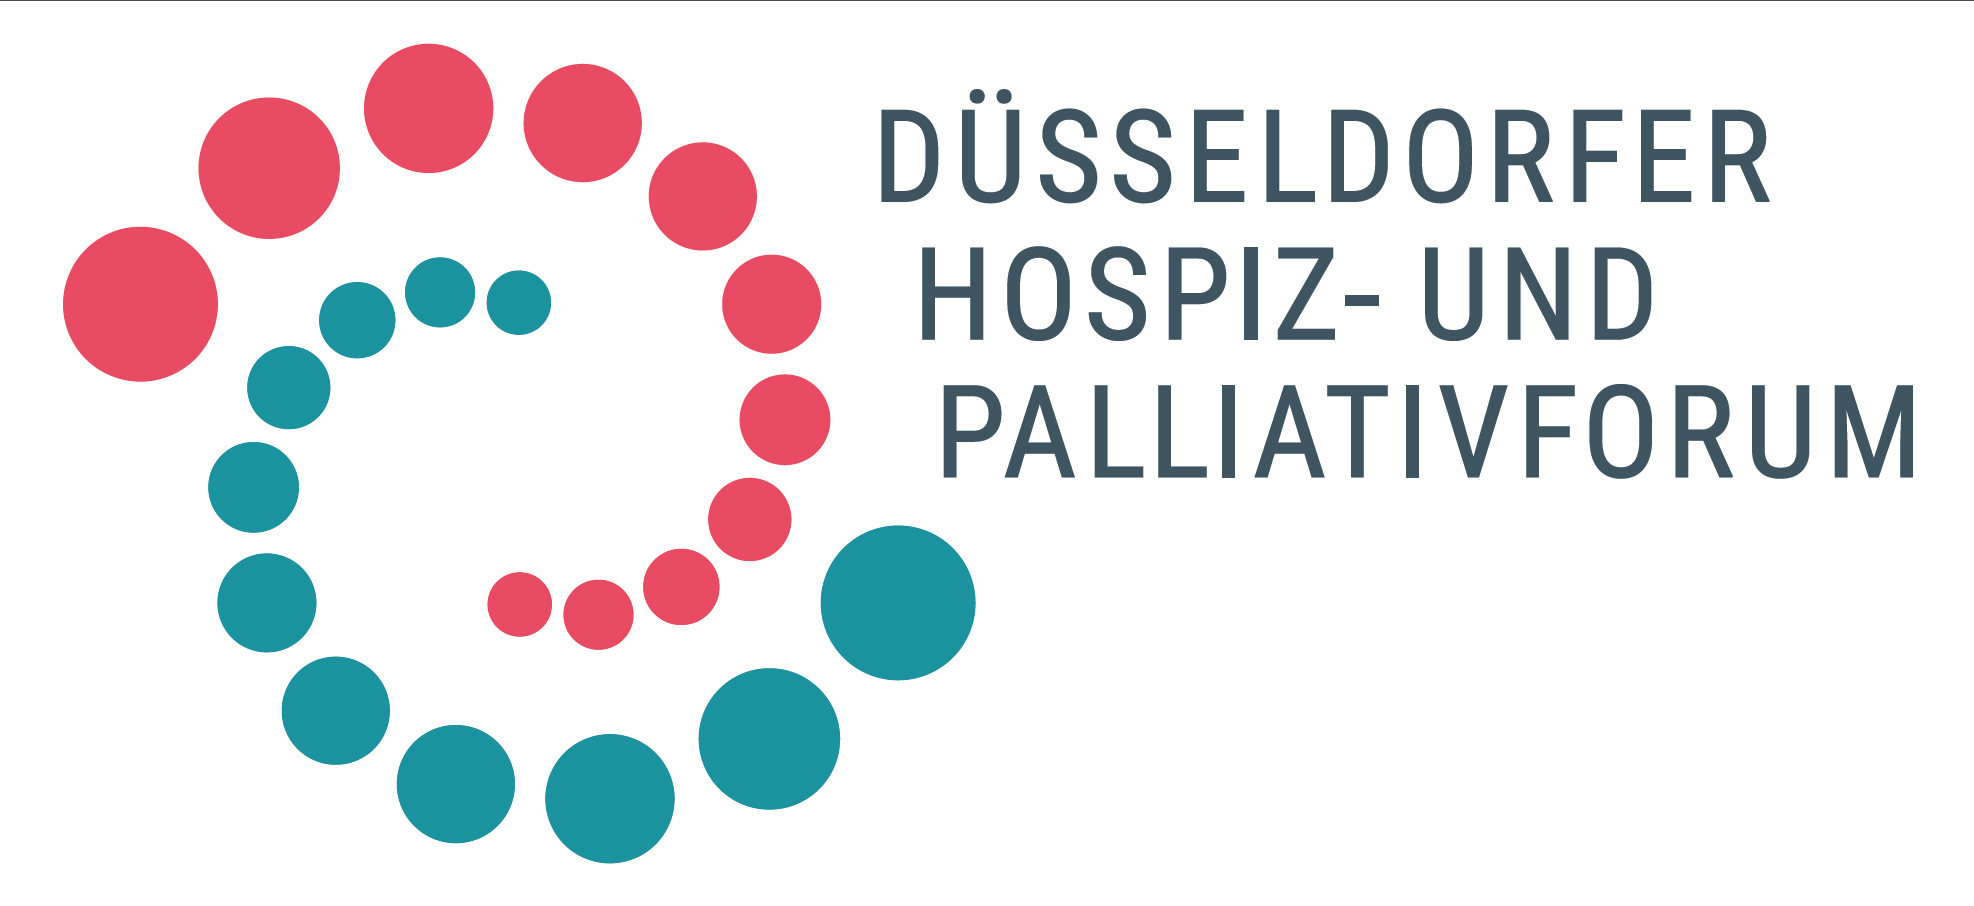 Düsseldorfer Hospiz- und Palliativforum